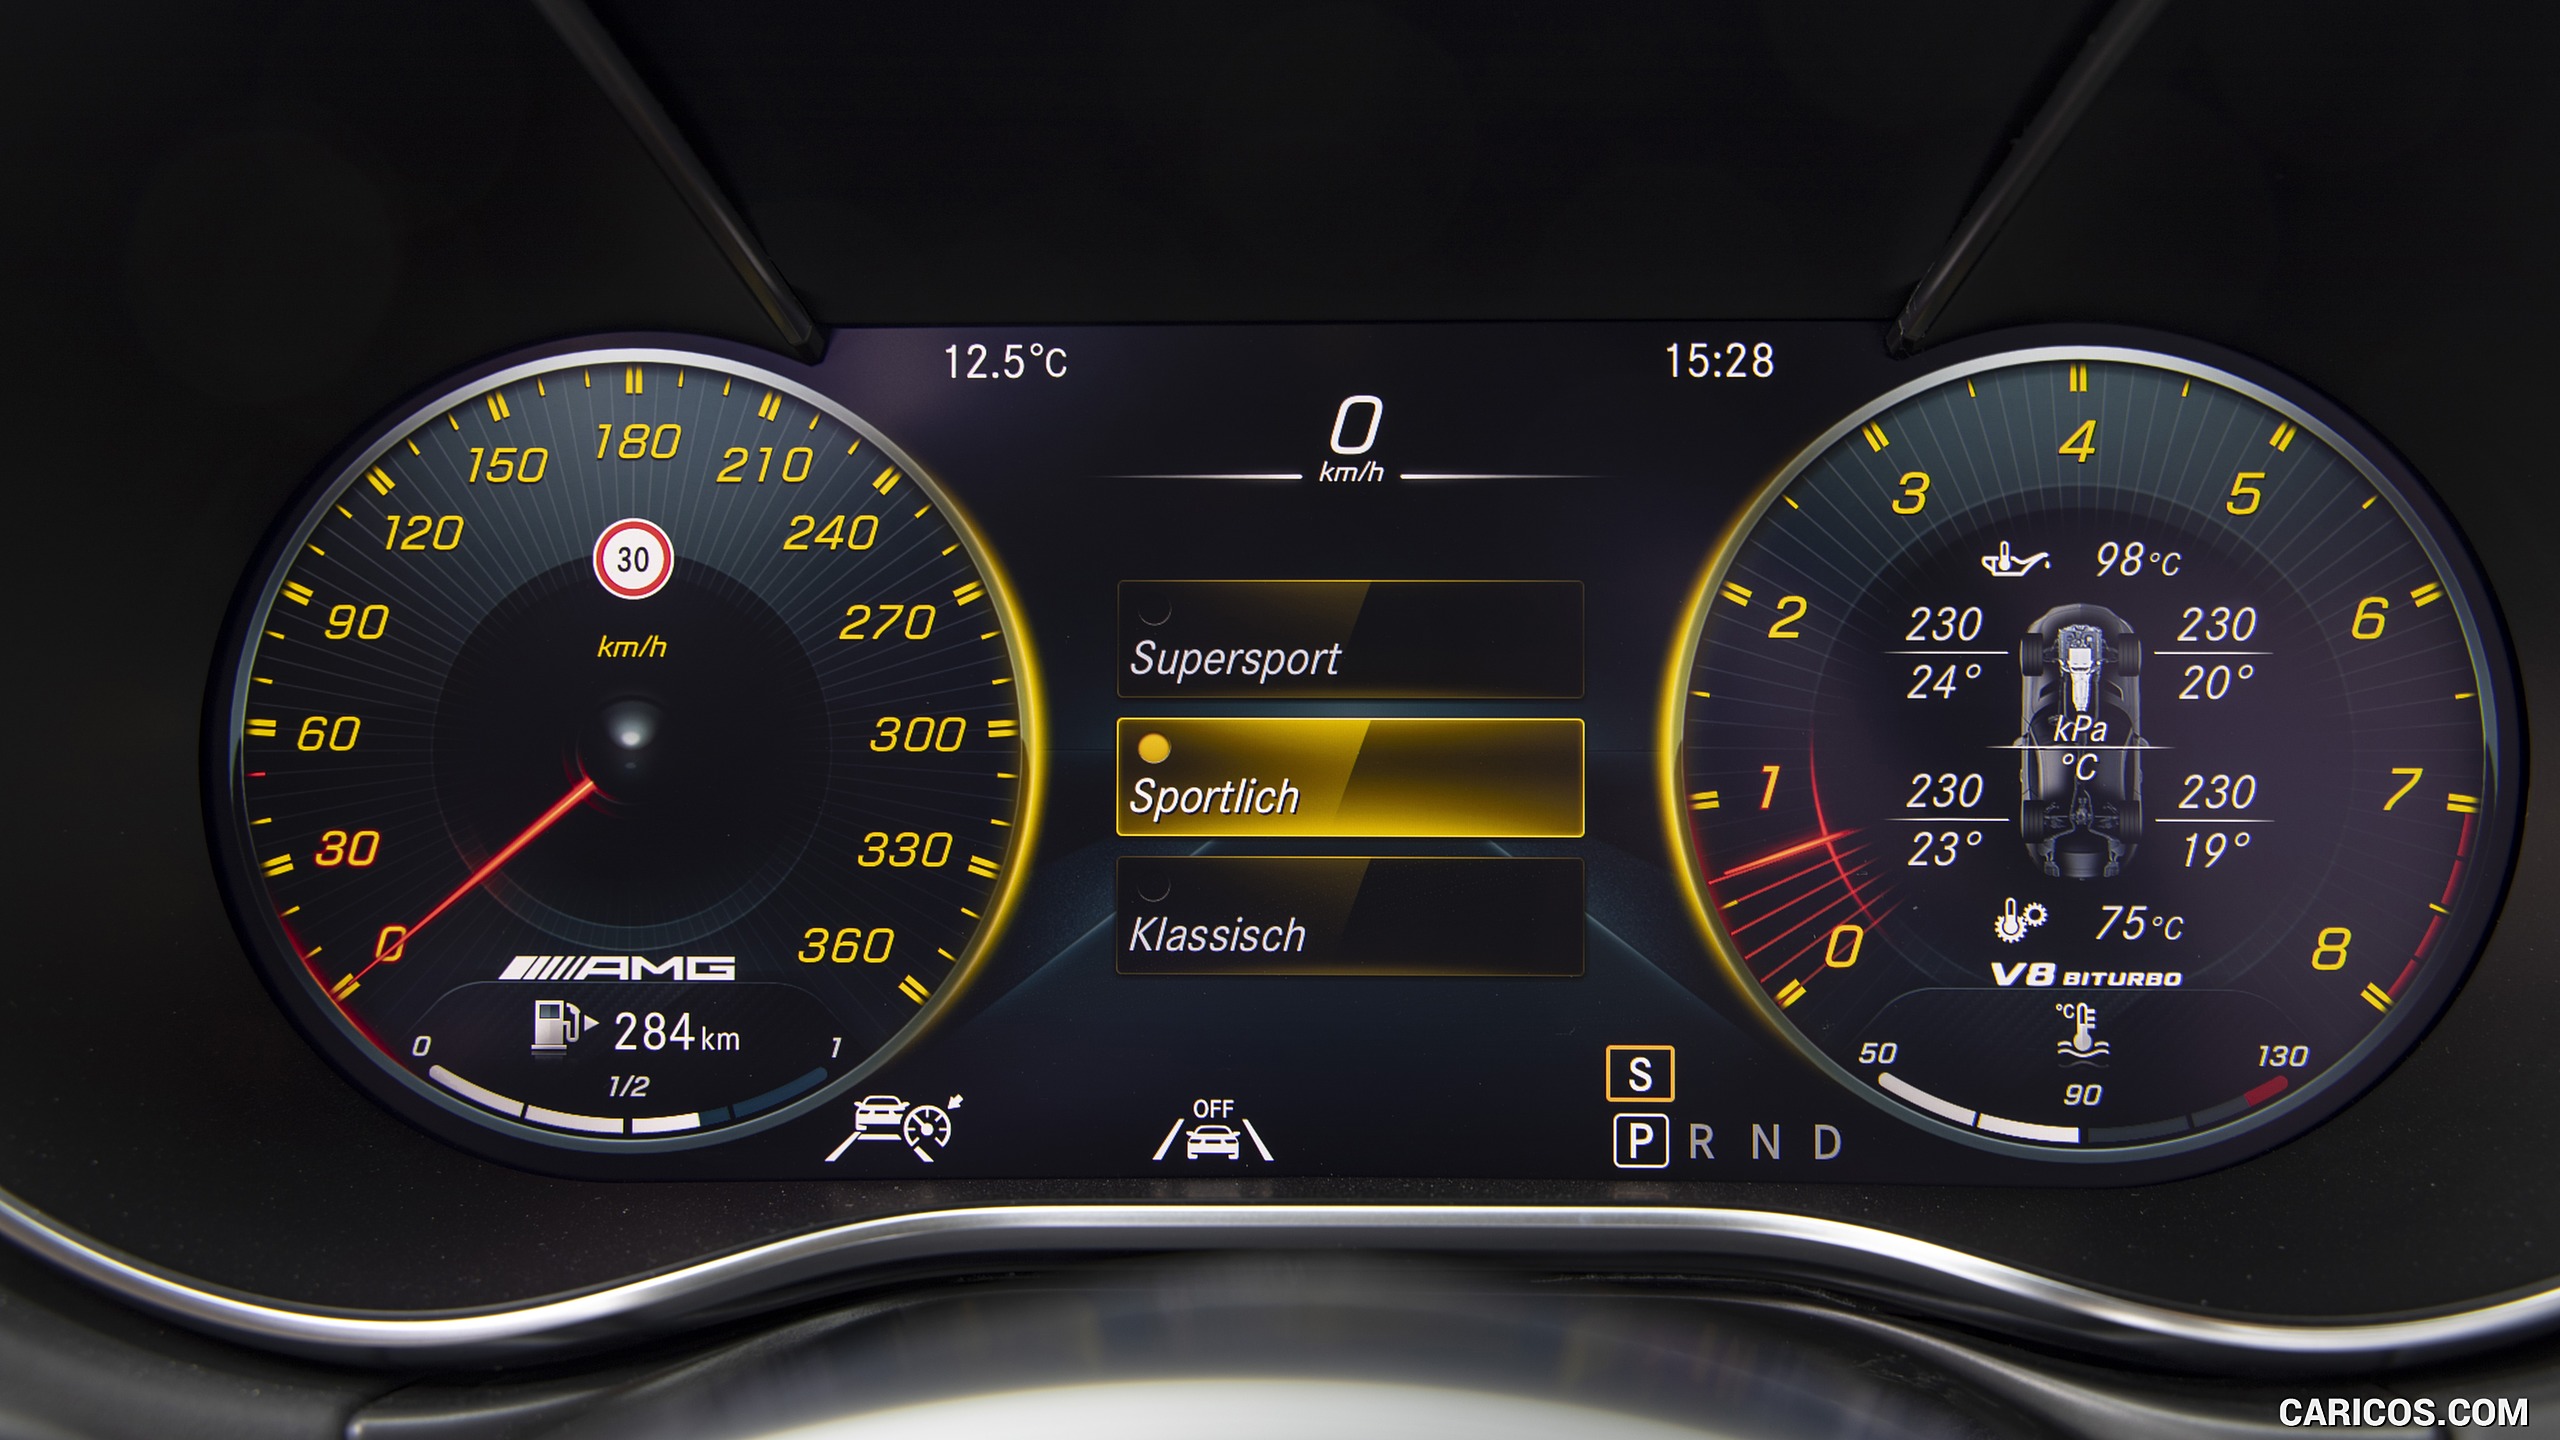 2020 Mercedes-AMG GT S Roadster - Digital Instrument Cluster, #107 of 328